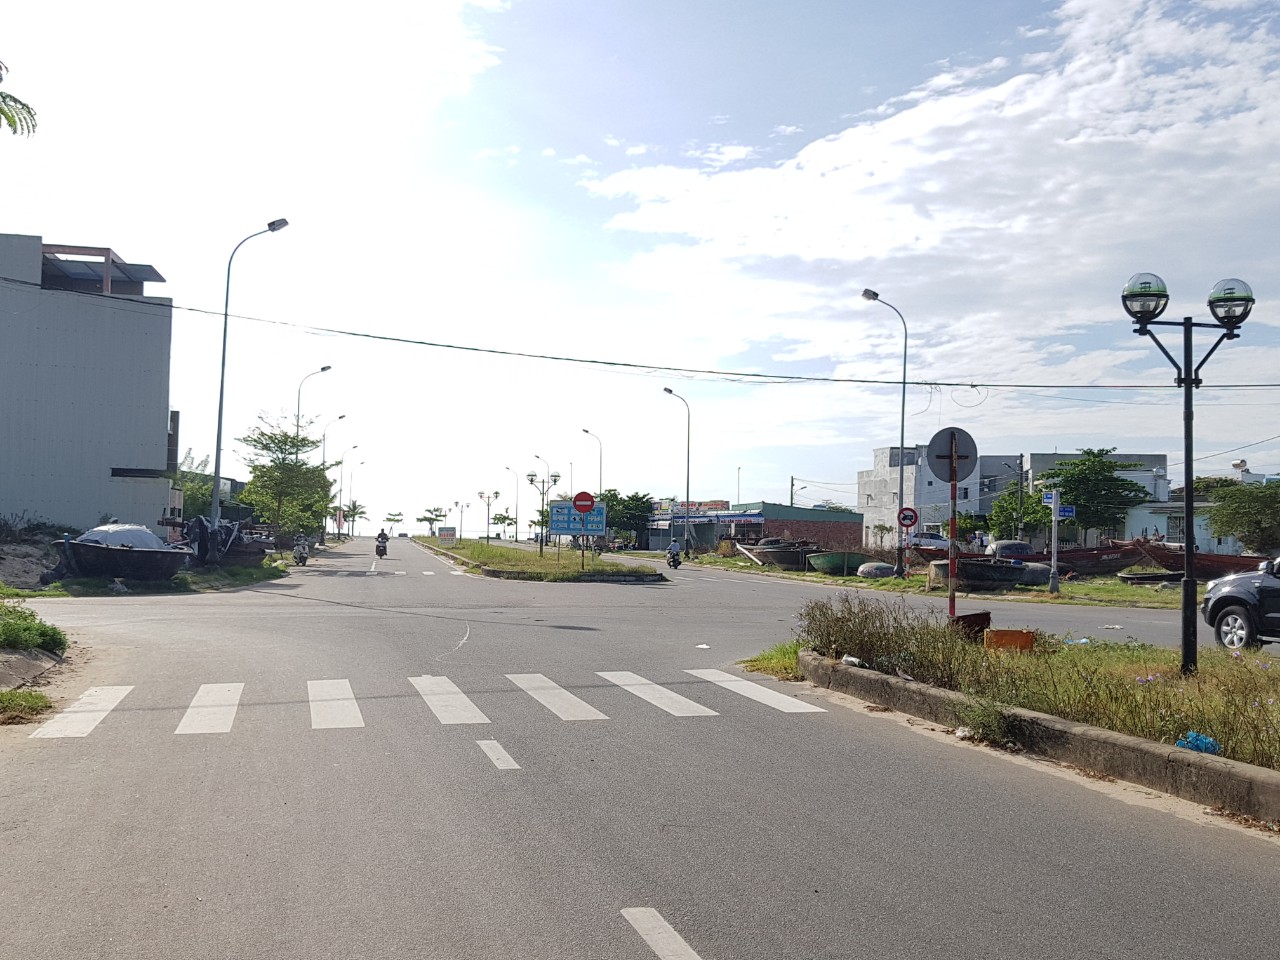 Nhà đường Nguyễn Trọng Nghĩa, lô kẹp cống, sát ngã tư đường Nguyễn Huy Chương, cách biển 50m